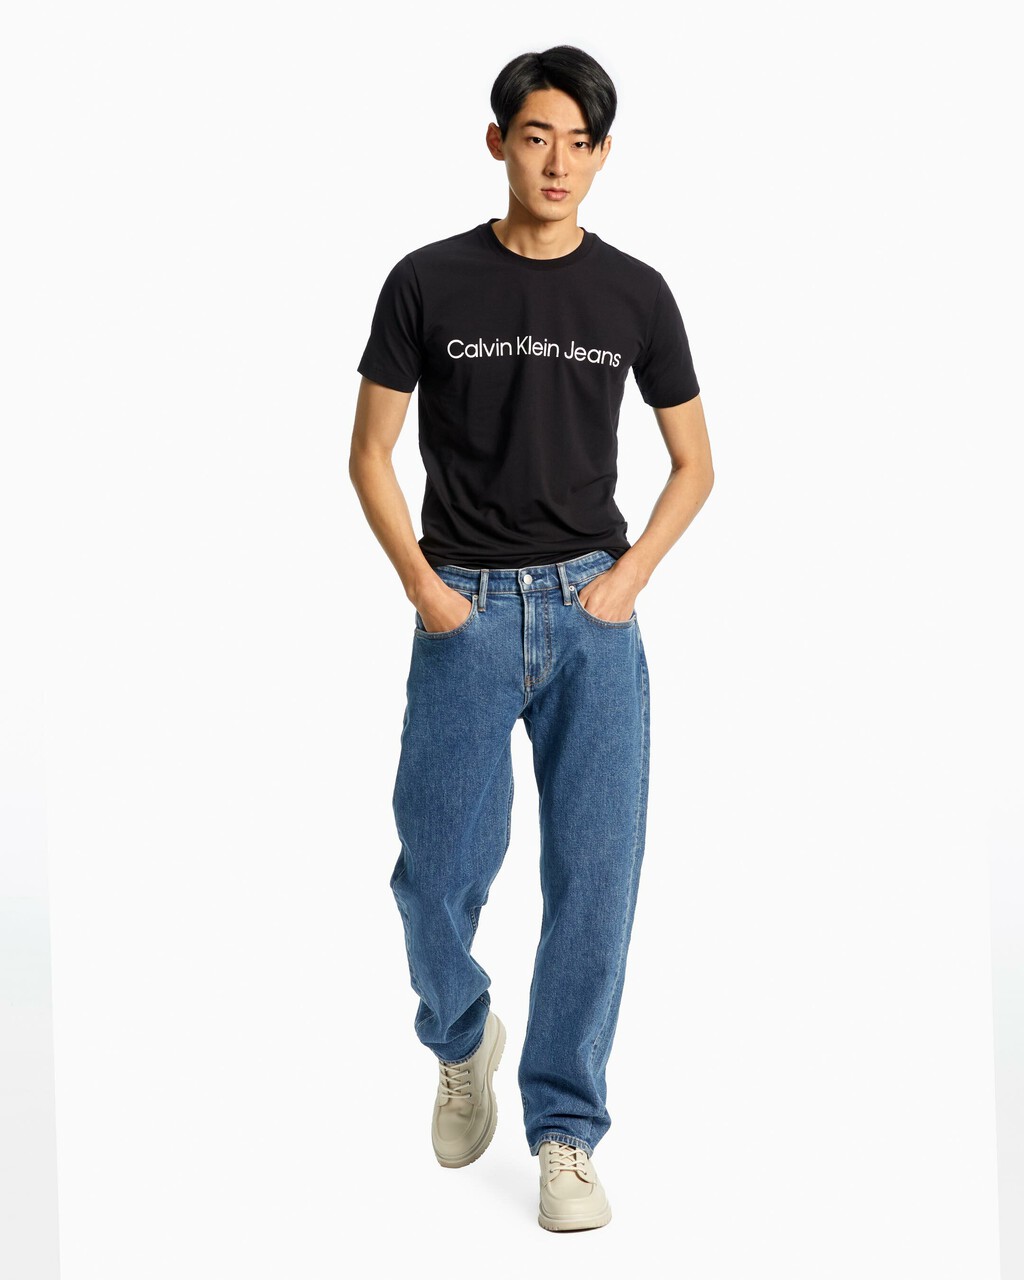 90 年代直筒款牛仔褲, Mid Blue, hi-res